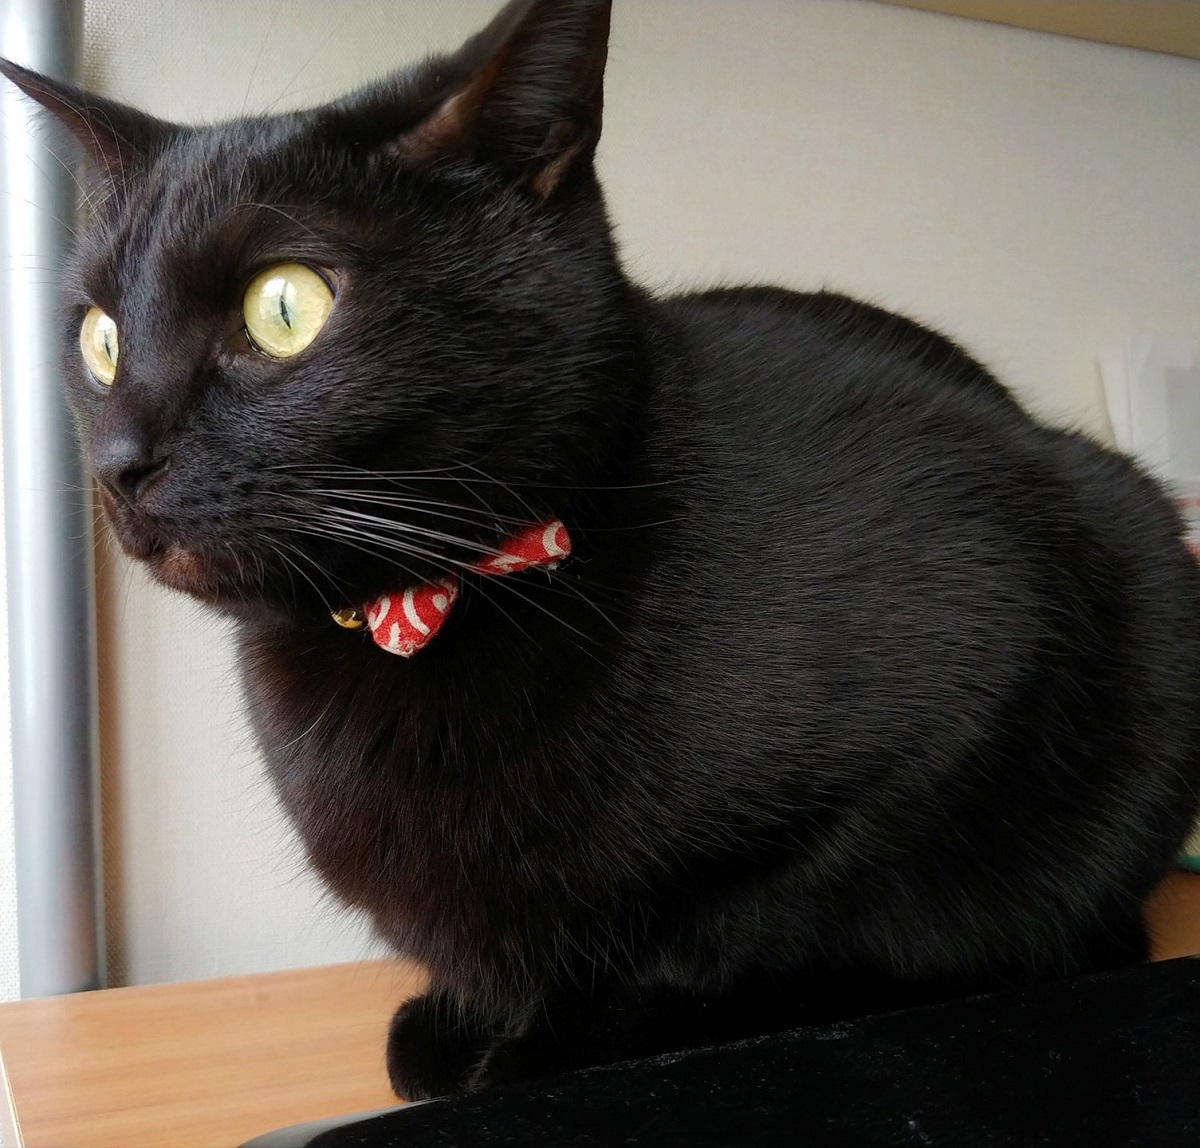 「ジー……」目を丸くして雪を見つめる黒猫